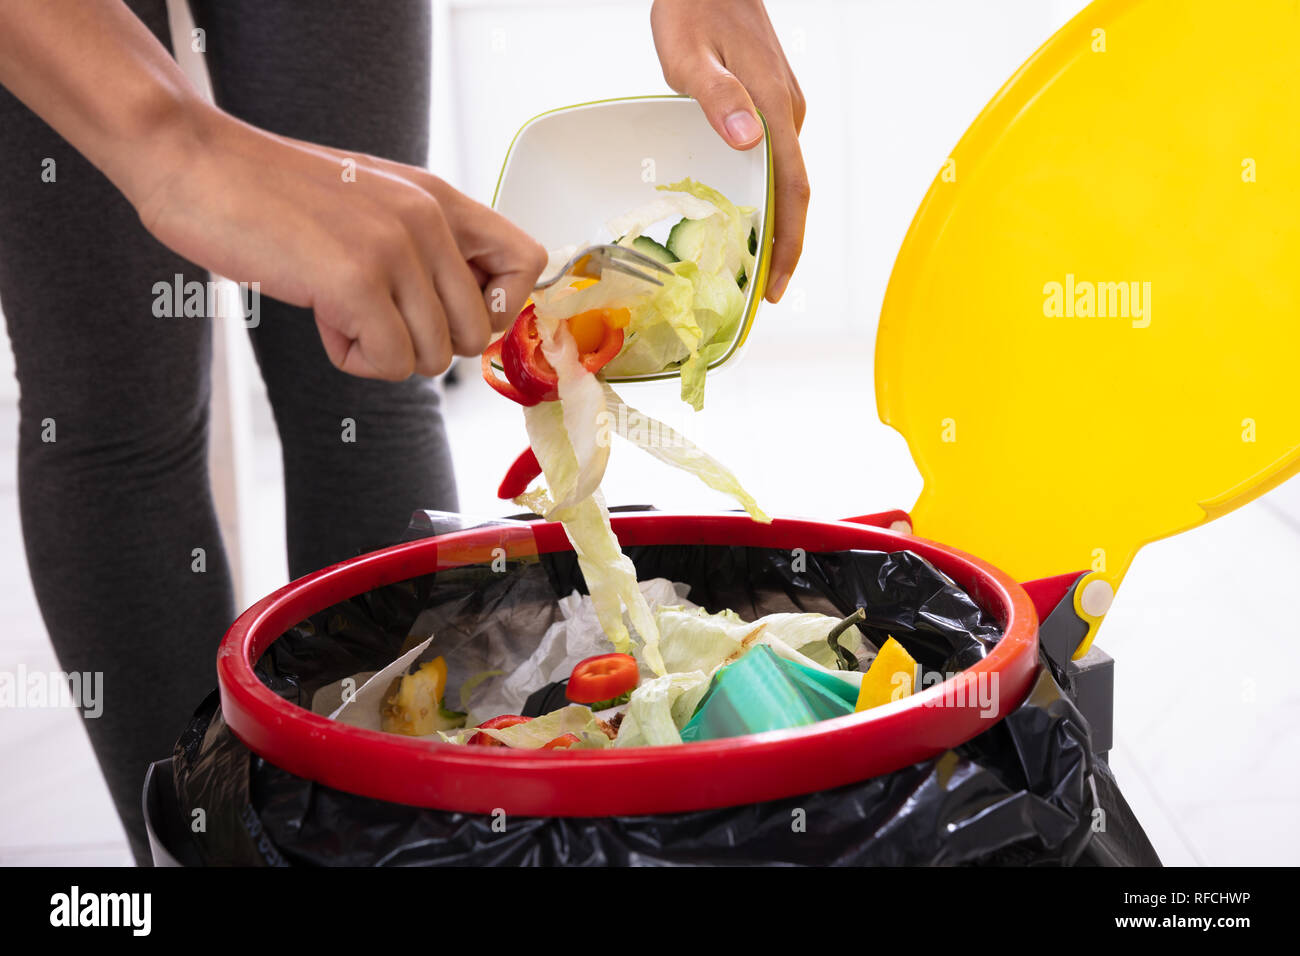 Nahaufnahme von einer Frau Hand werfen Salat in der offenen Papierkorb Stockfoto